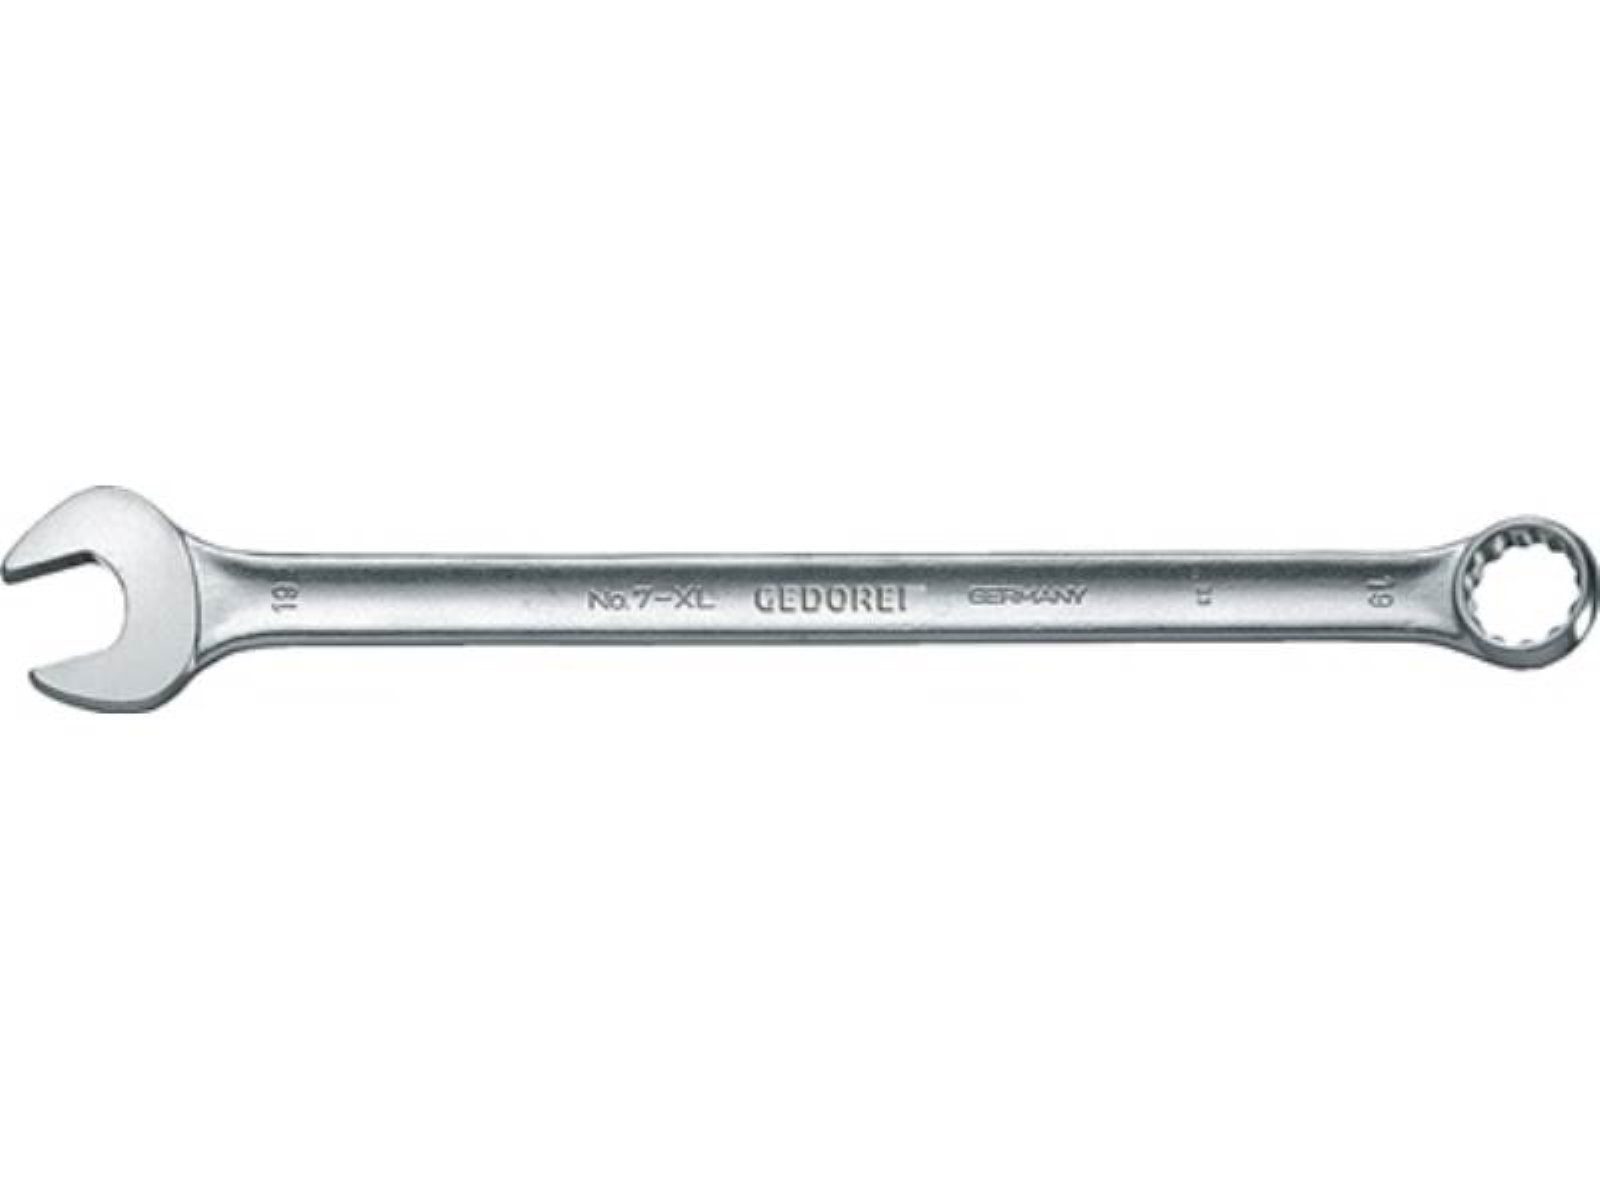 Ringmaulschlüssel ext.lang SW 7 22mm GEDOR A Gedore XL Maulschlüssel Form L.350mm CV-Stahl